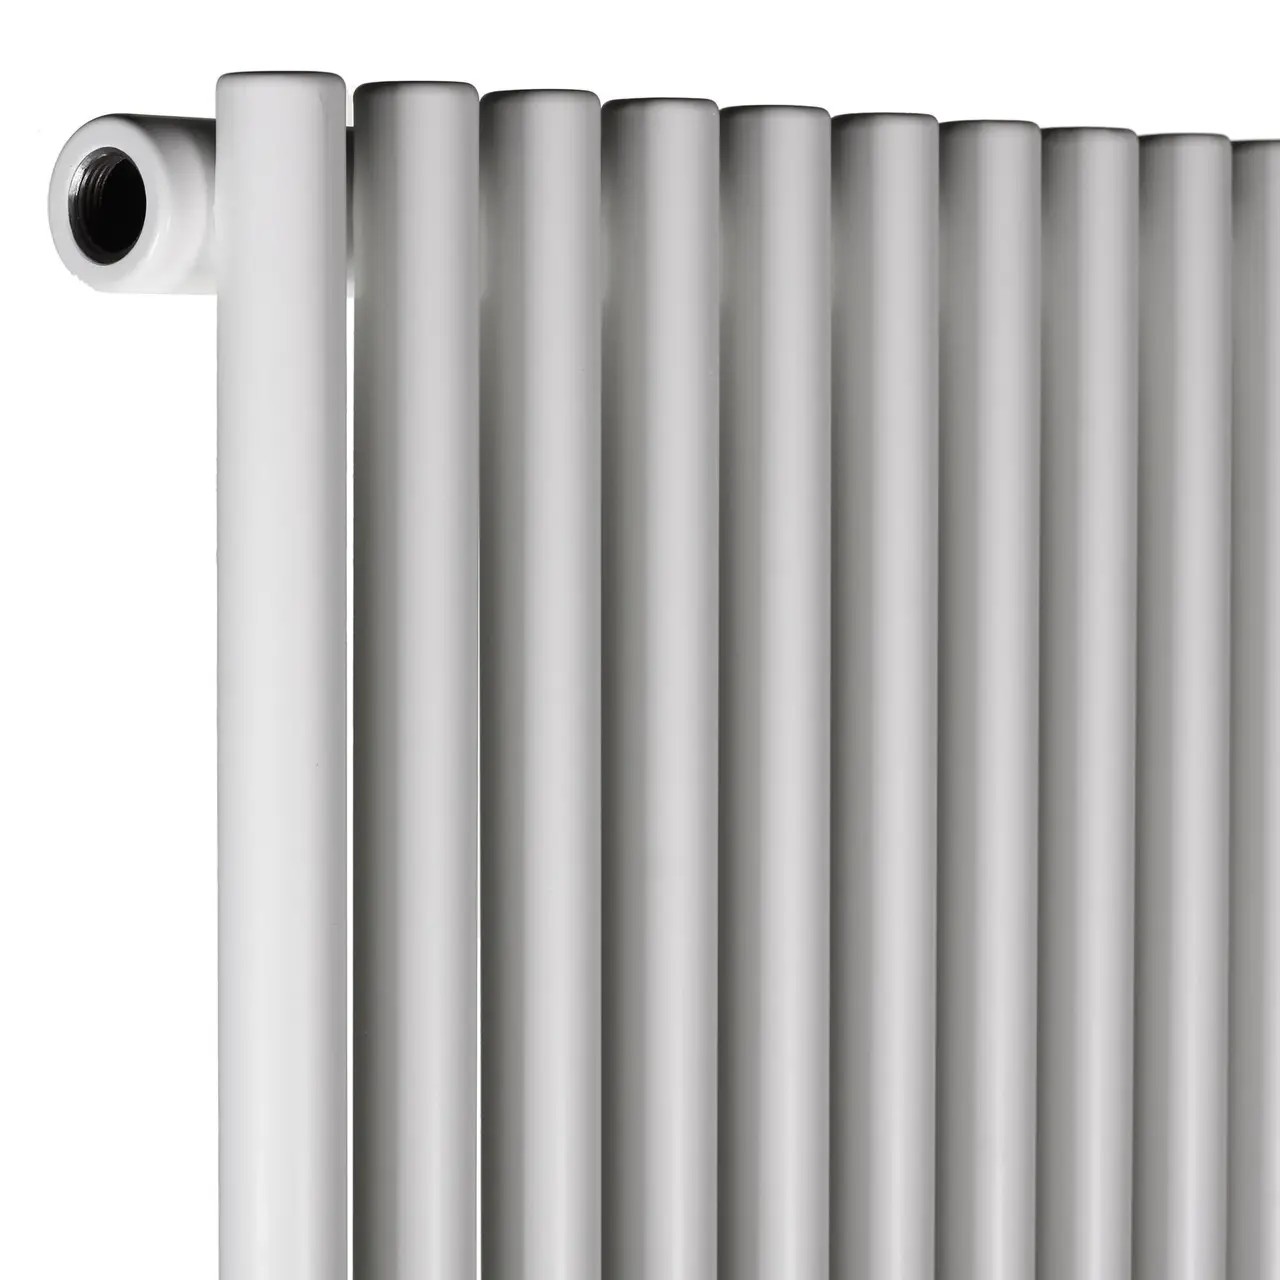 Радиатор для отопления Betatherm PRAKTIKUM 1 H-1800мм, L-463мм (PV 1180/12 9016М 99) отзывы - изображения 5